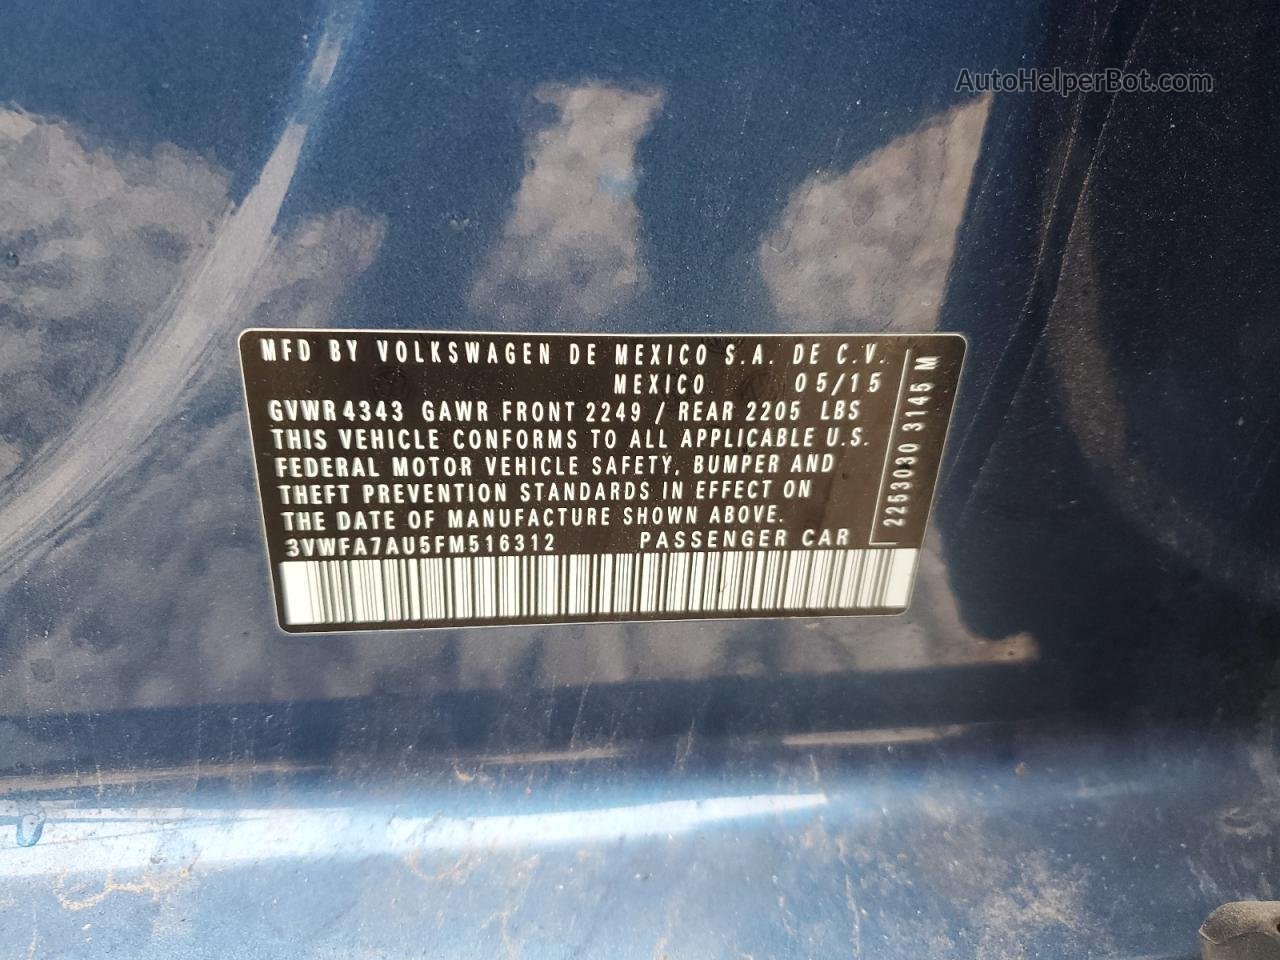 2015 Volkswagen Golf Sportwagen Tdi S Blue vin: 3VWFA7AU5FM516312